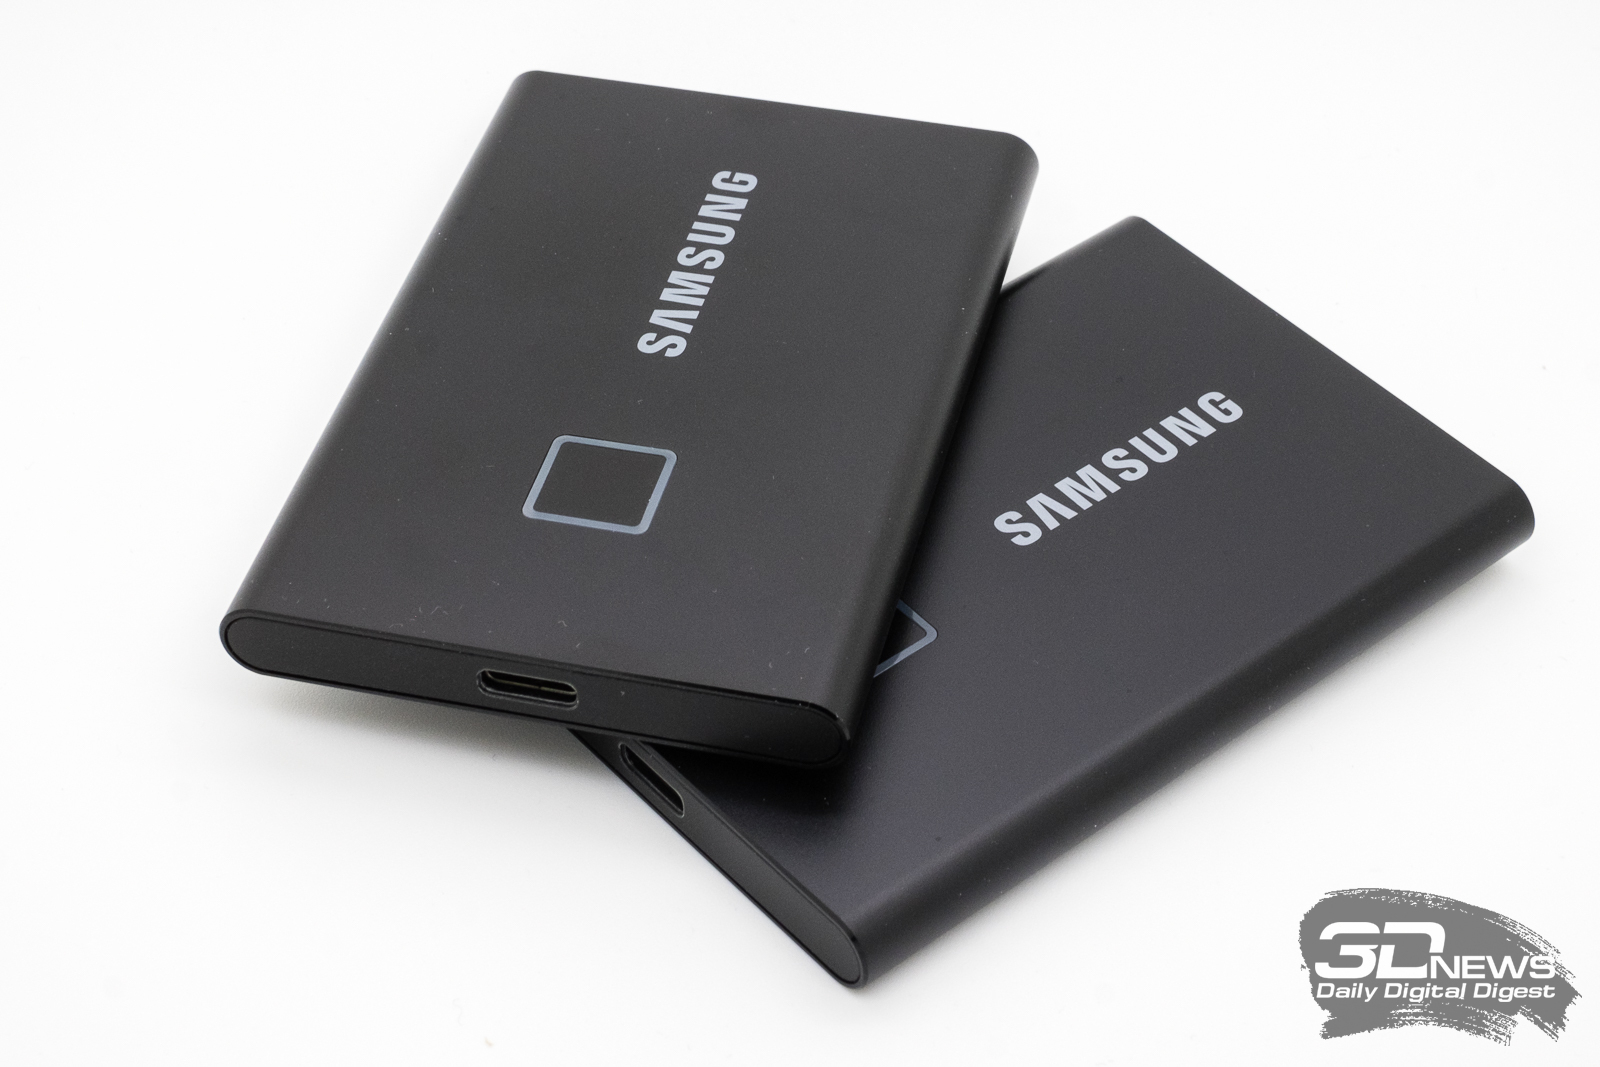 Samsung Portable Ssd Setup Win